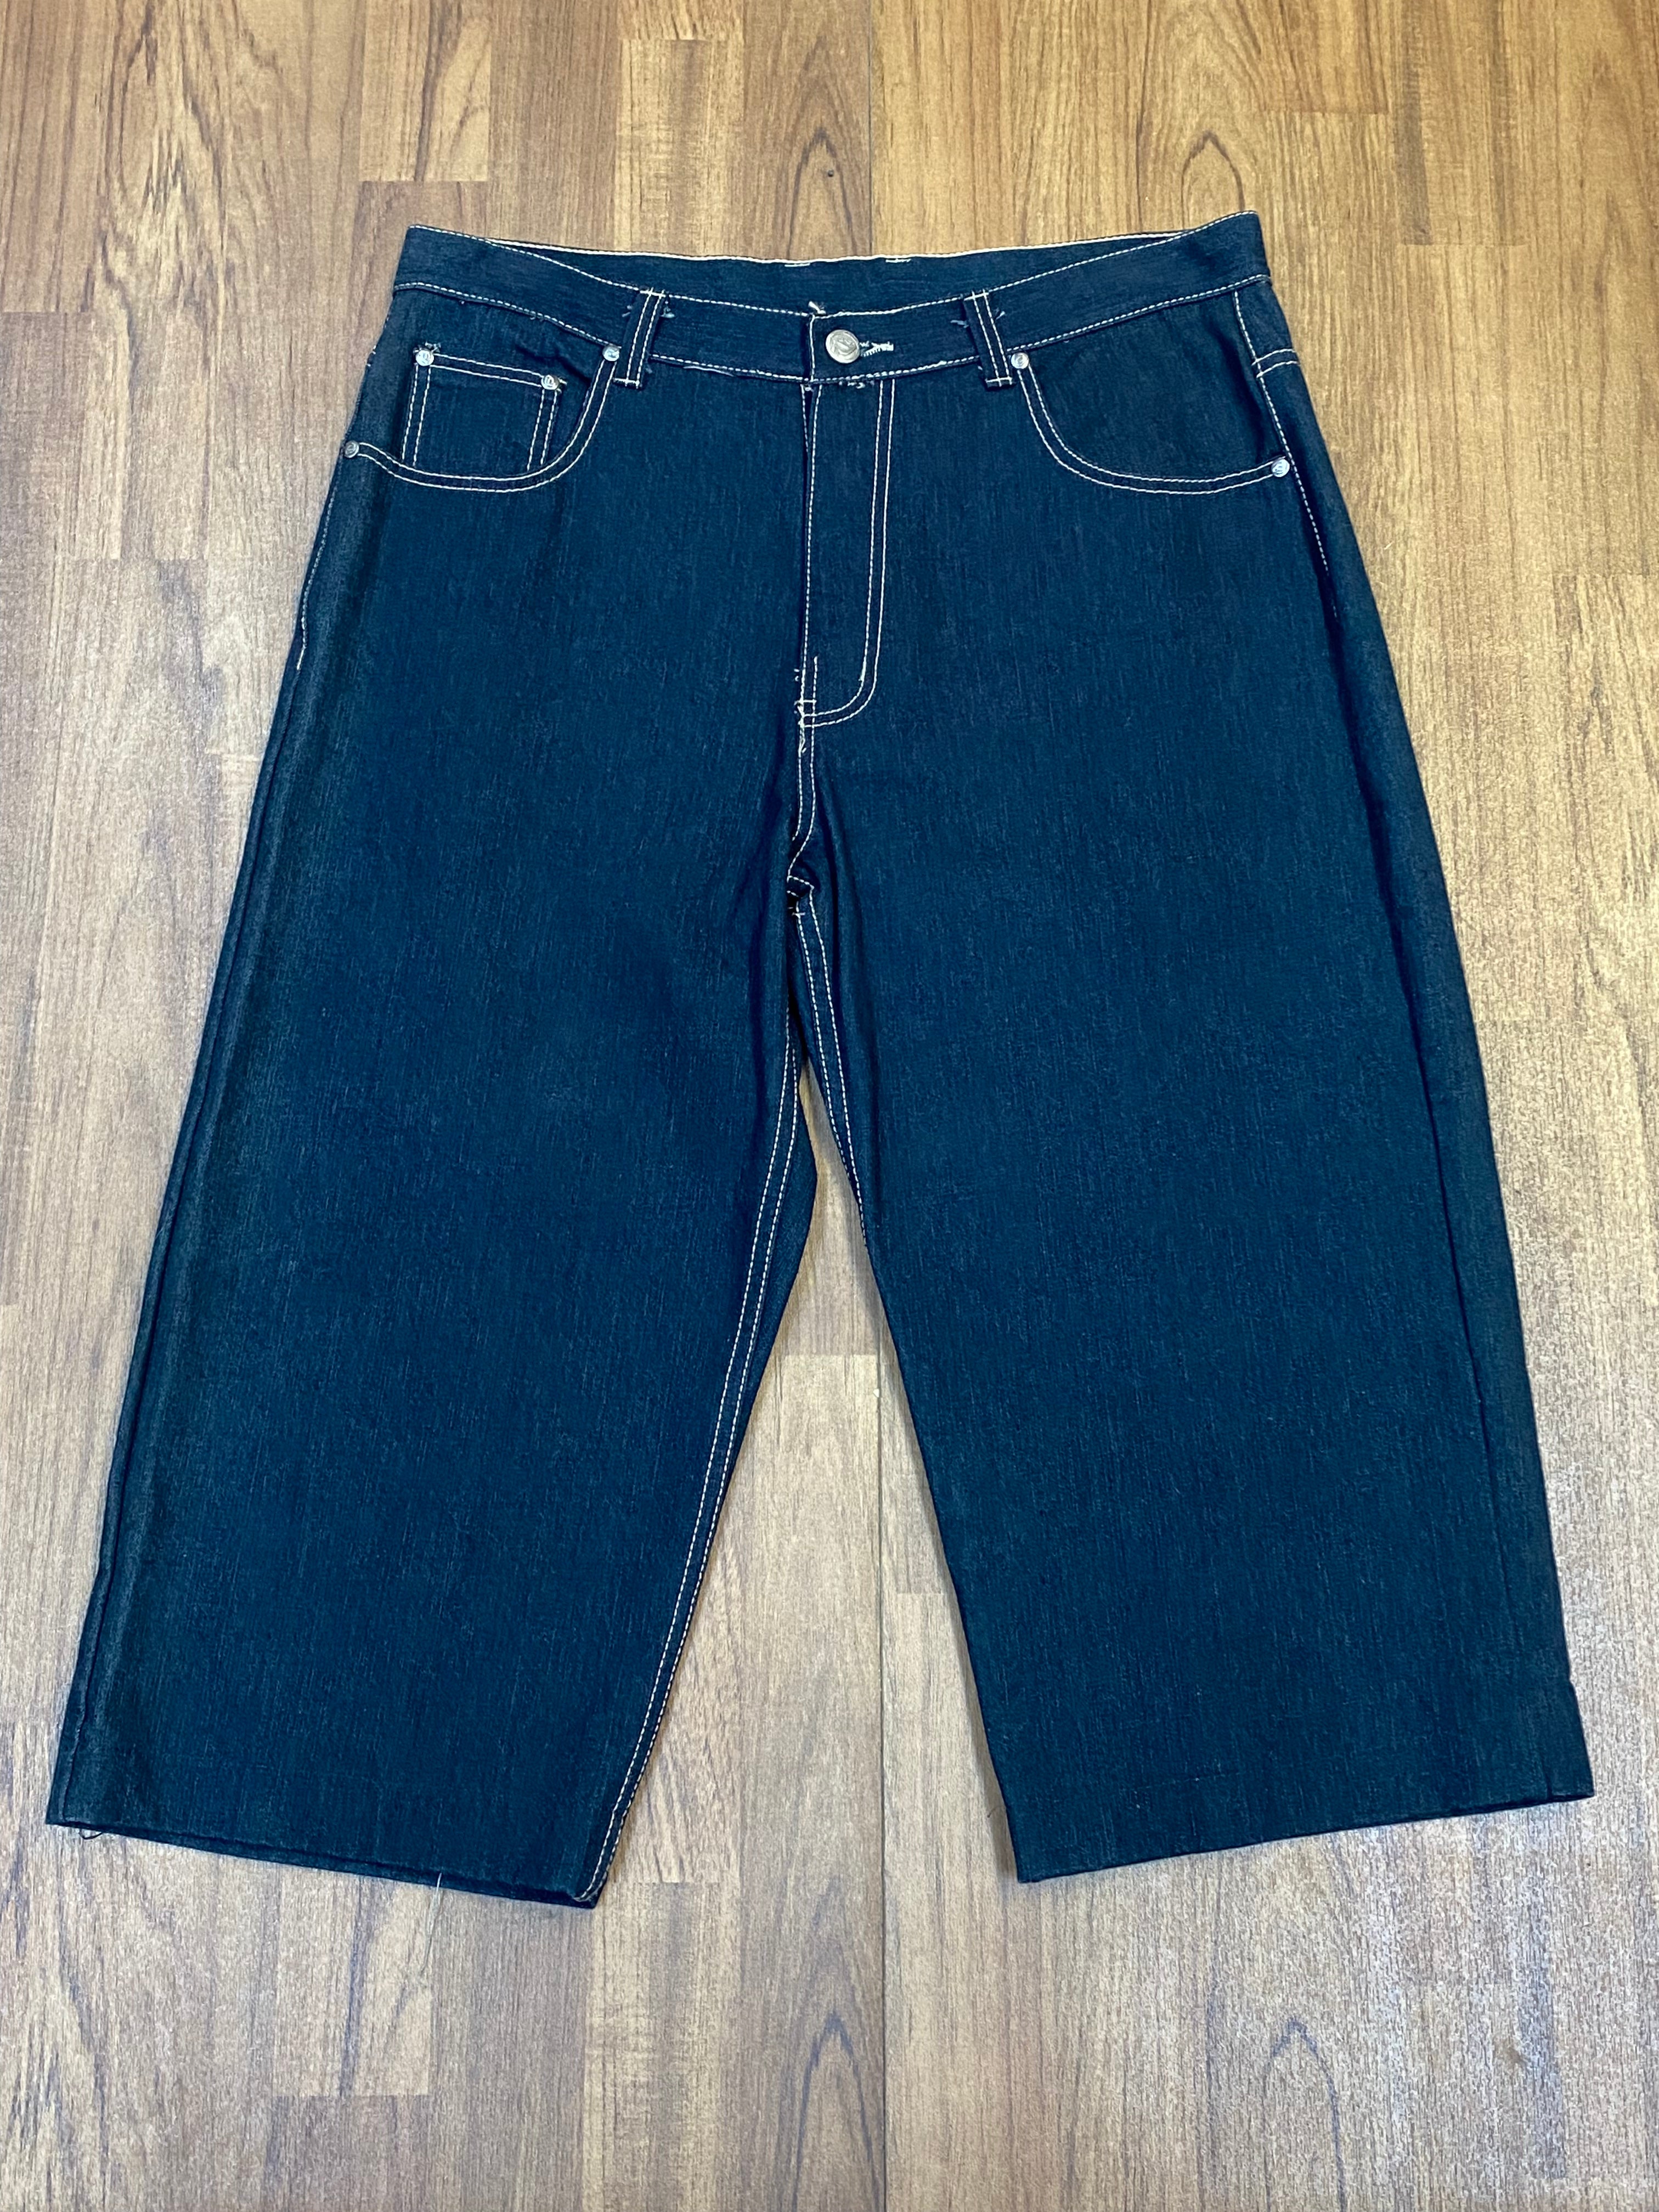 Vintage 1990er Baggy Black Denim Jeans Skater Style Jeans Size 36